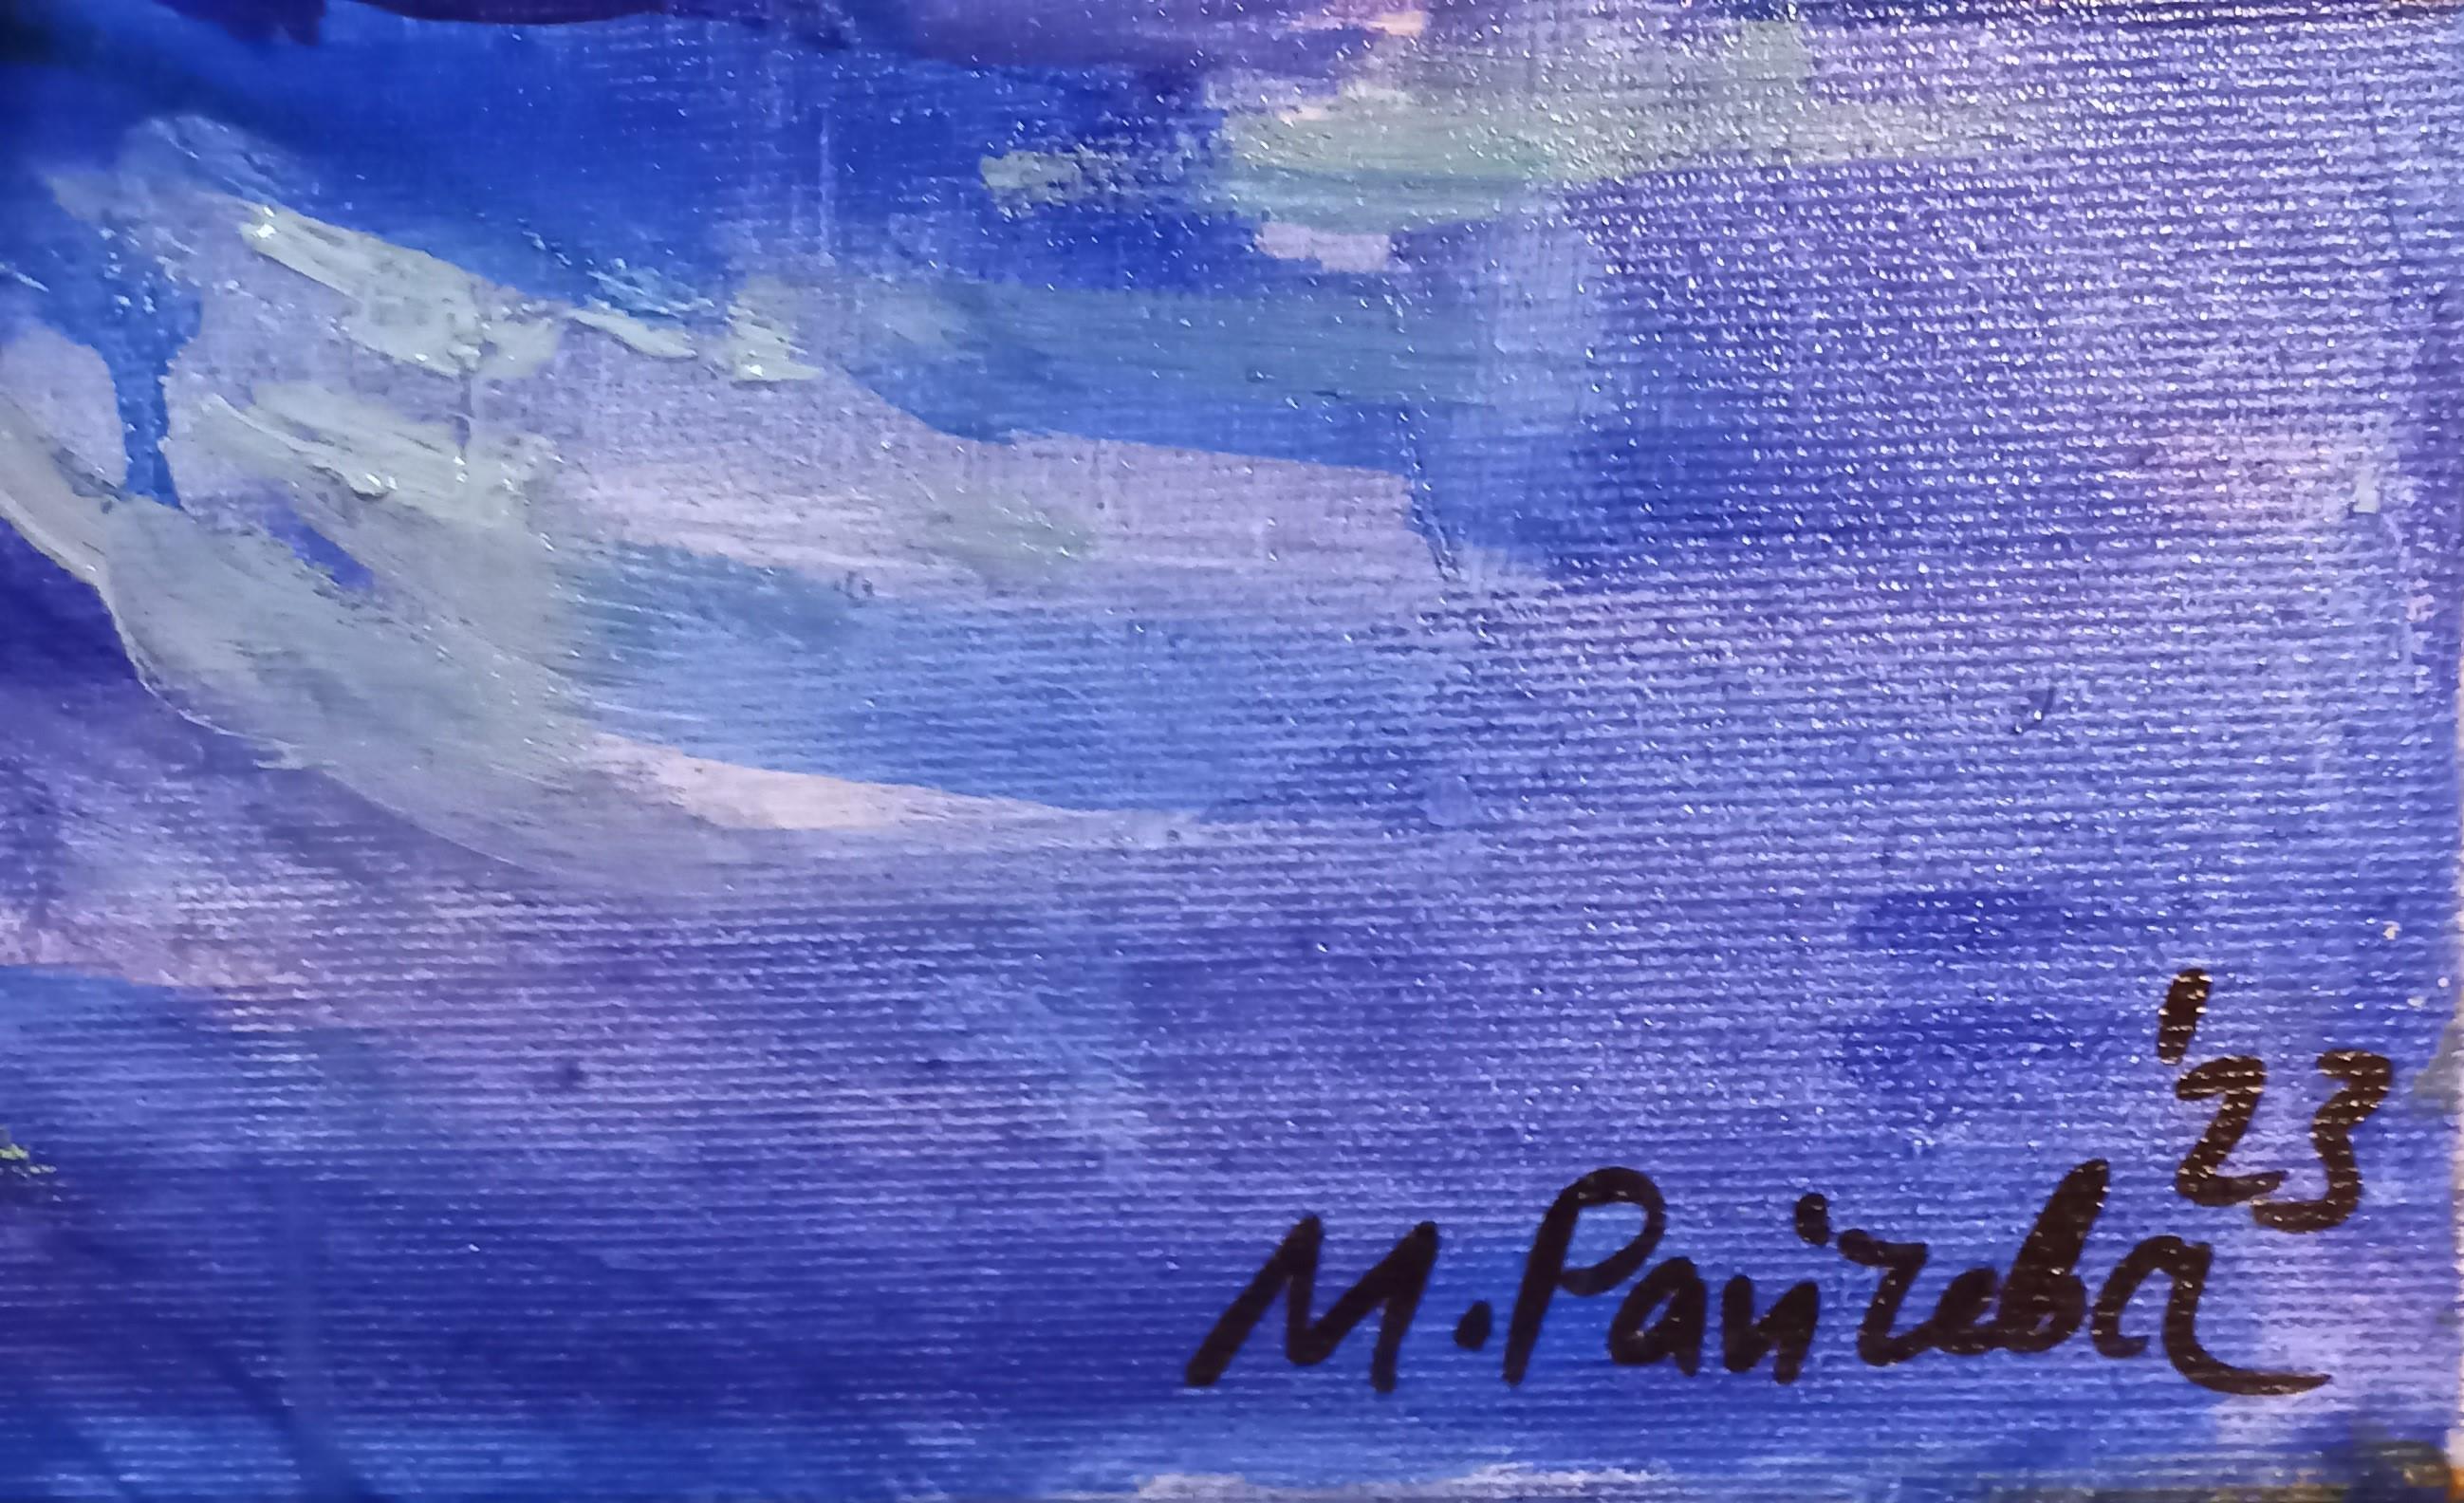 Jasmine – Landschaftsmalerei in Farben Weiß, Blau, Grün und Grün (Impressionismus), Painting, von Maria Raycheva